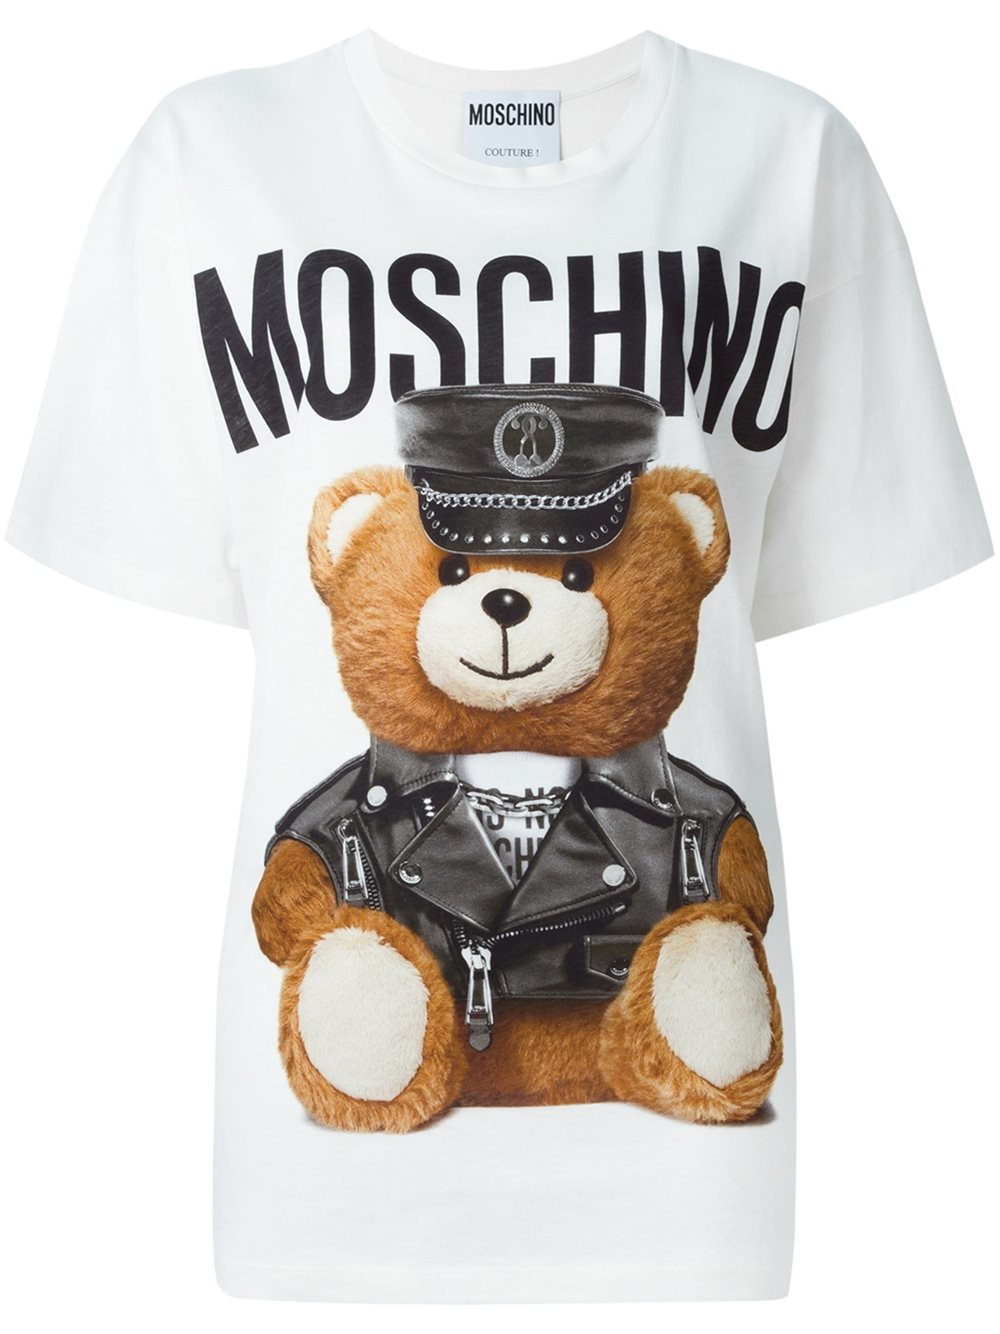 Japan online moschino t shirt womens teddy bear online